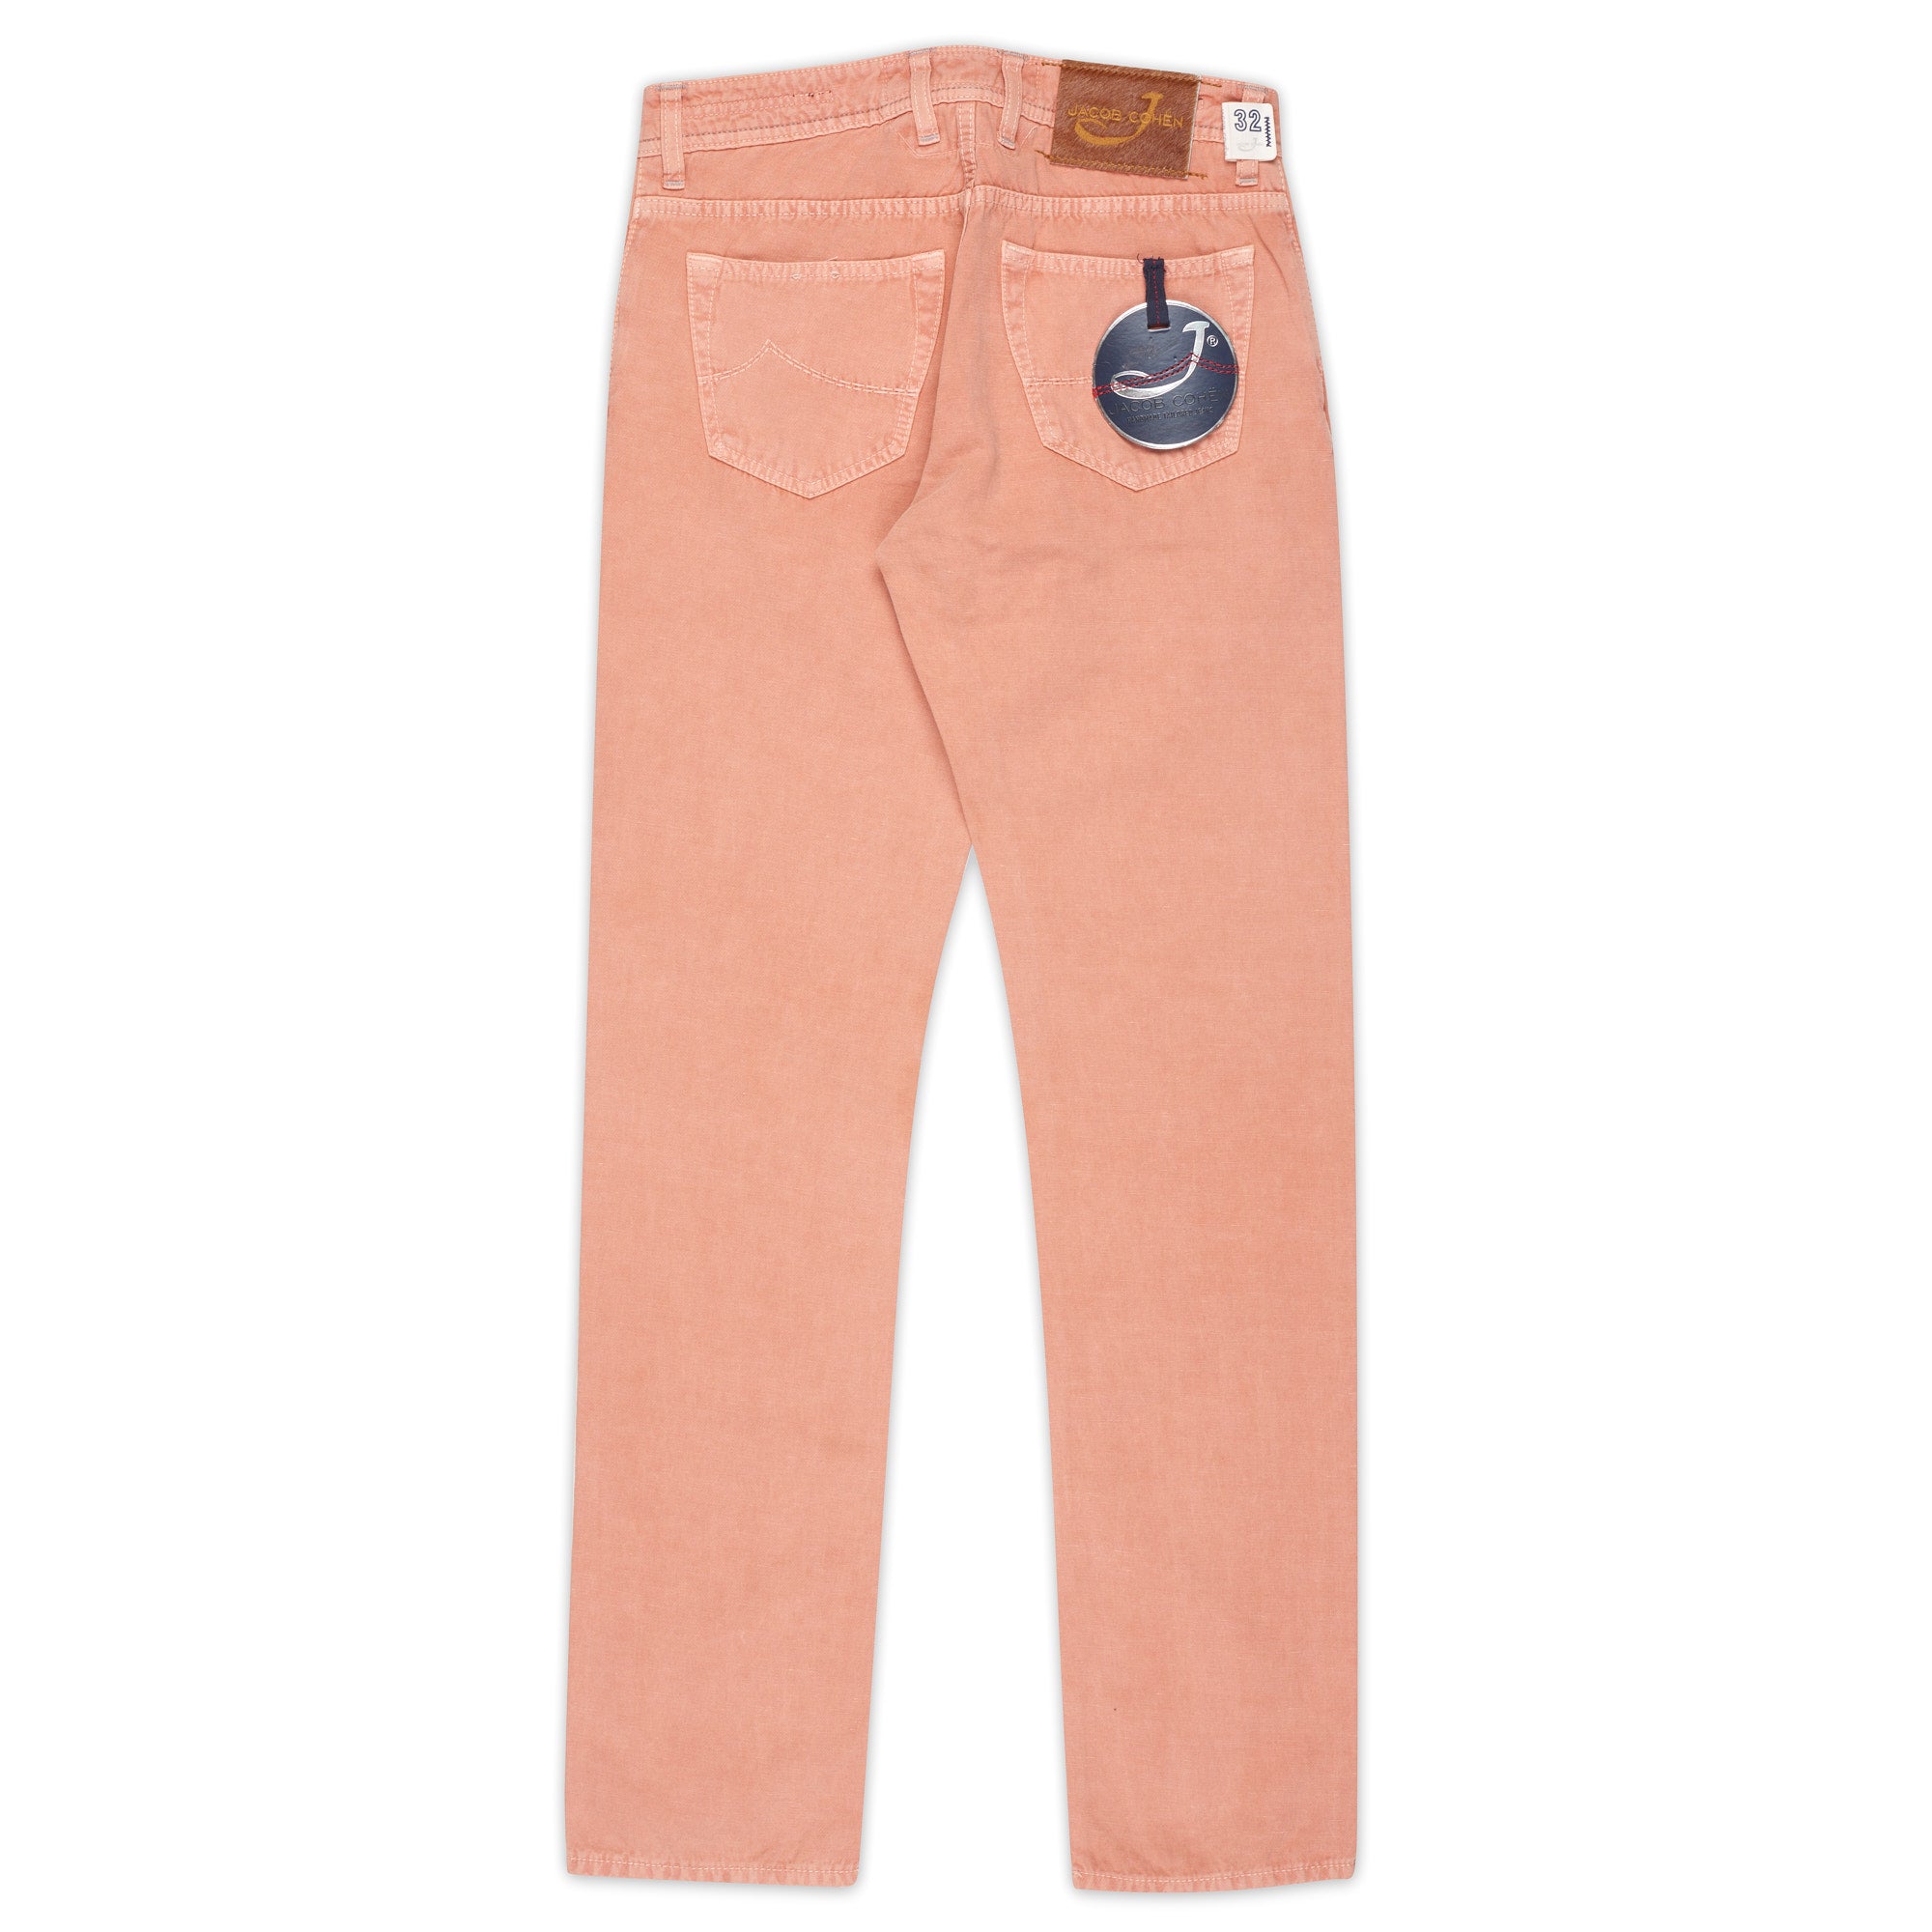 JACOB COHEN J688 Salmon Cotton-Linen Slim Fit Jeans Pants NEW US 32